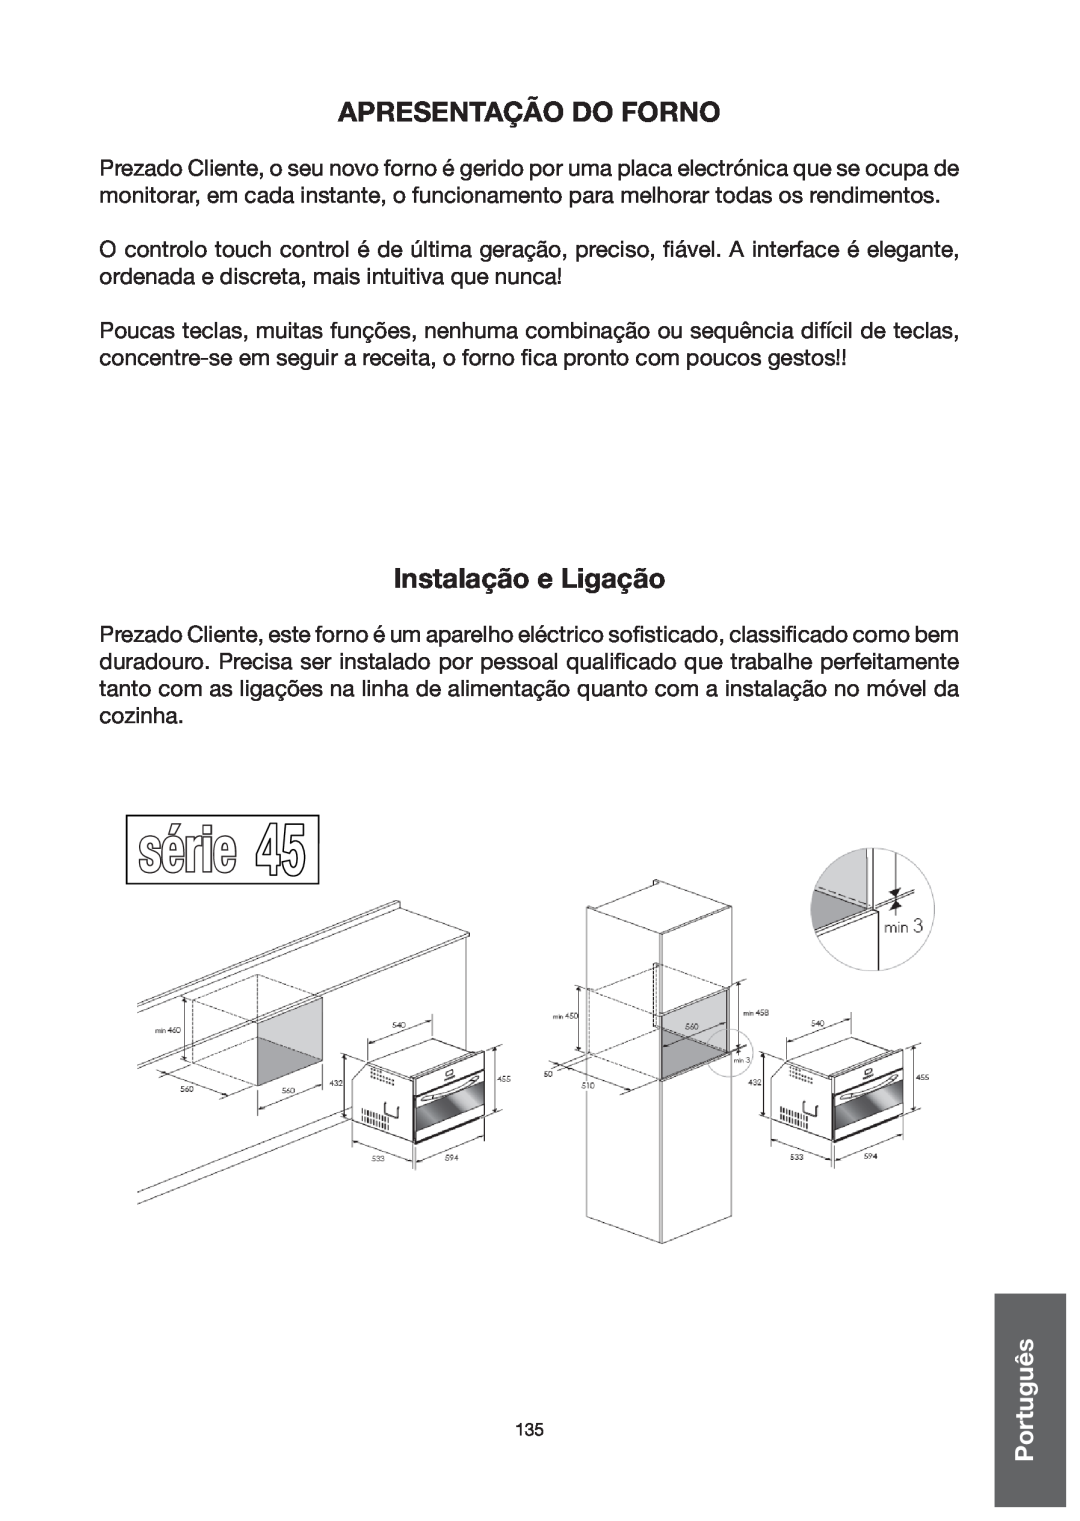 Baumatic BO667TS.DD manual série, Apresentação do forno, Instalação e Ligação 